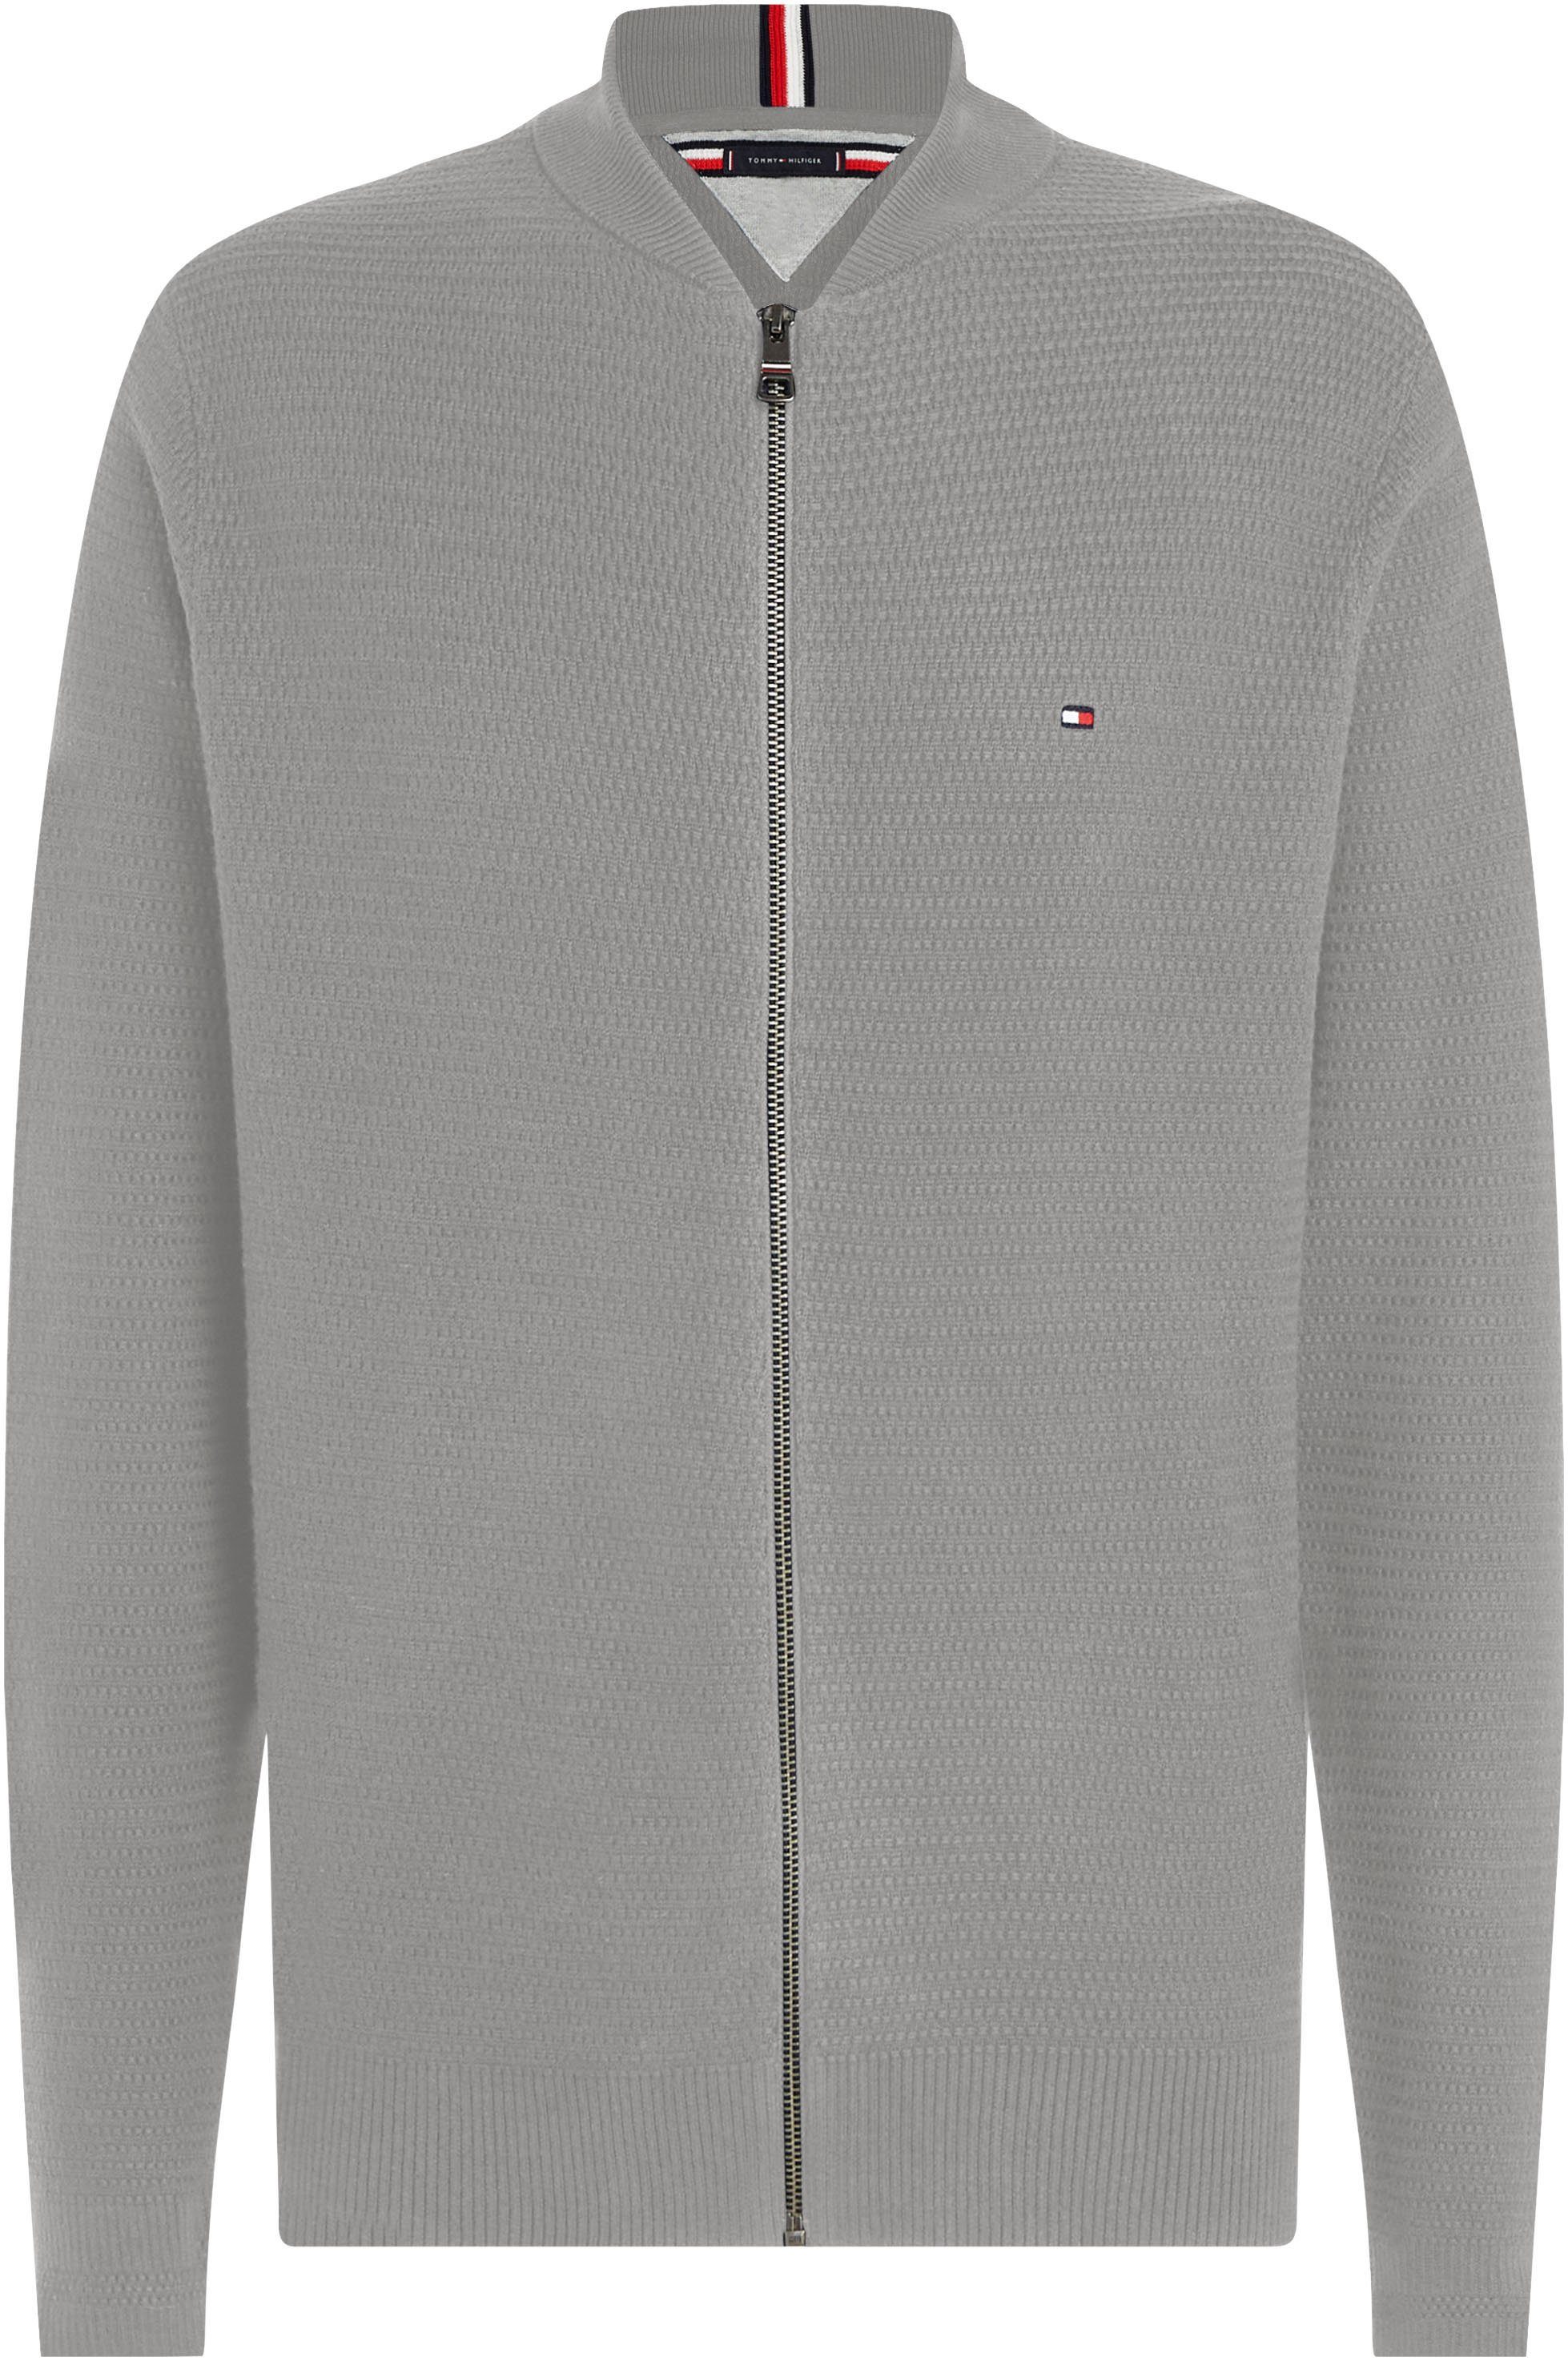 Tommy Hilfiger Sweatshirt INTERLACED THROUGH Optik strukturierter Medium in Grey BASEBALL ZIP Heather